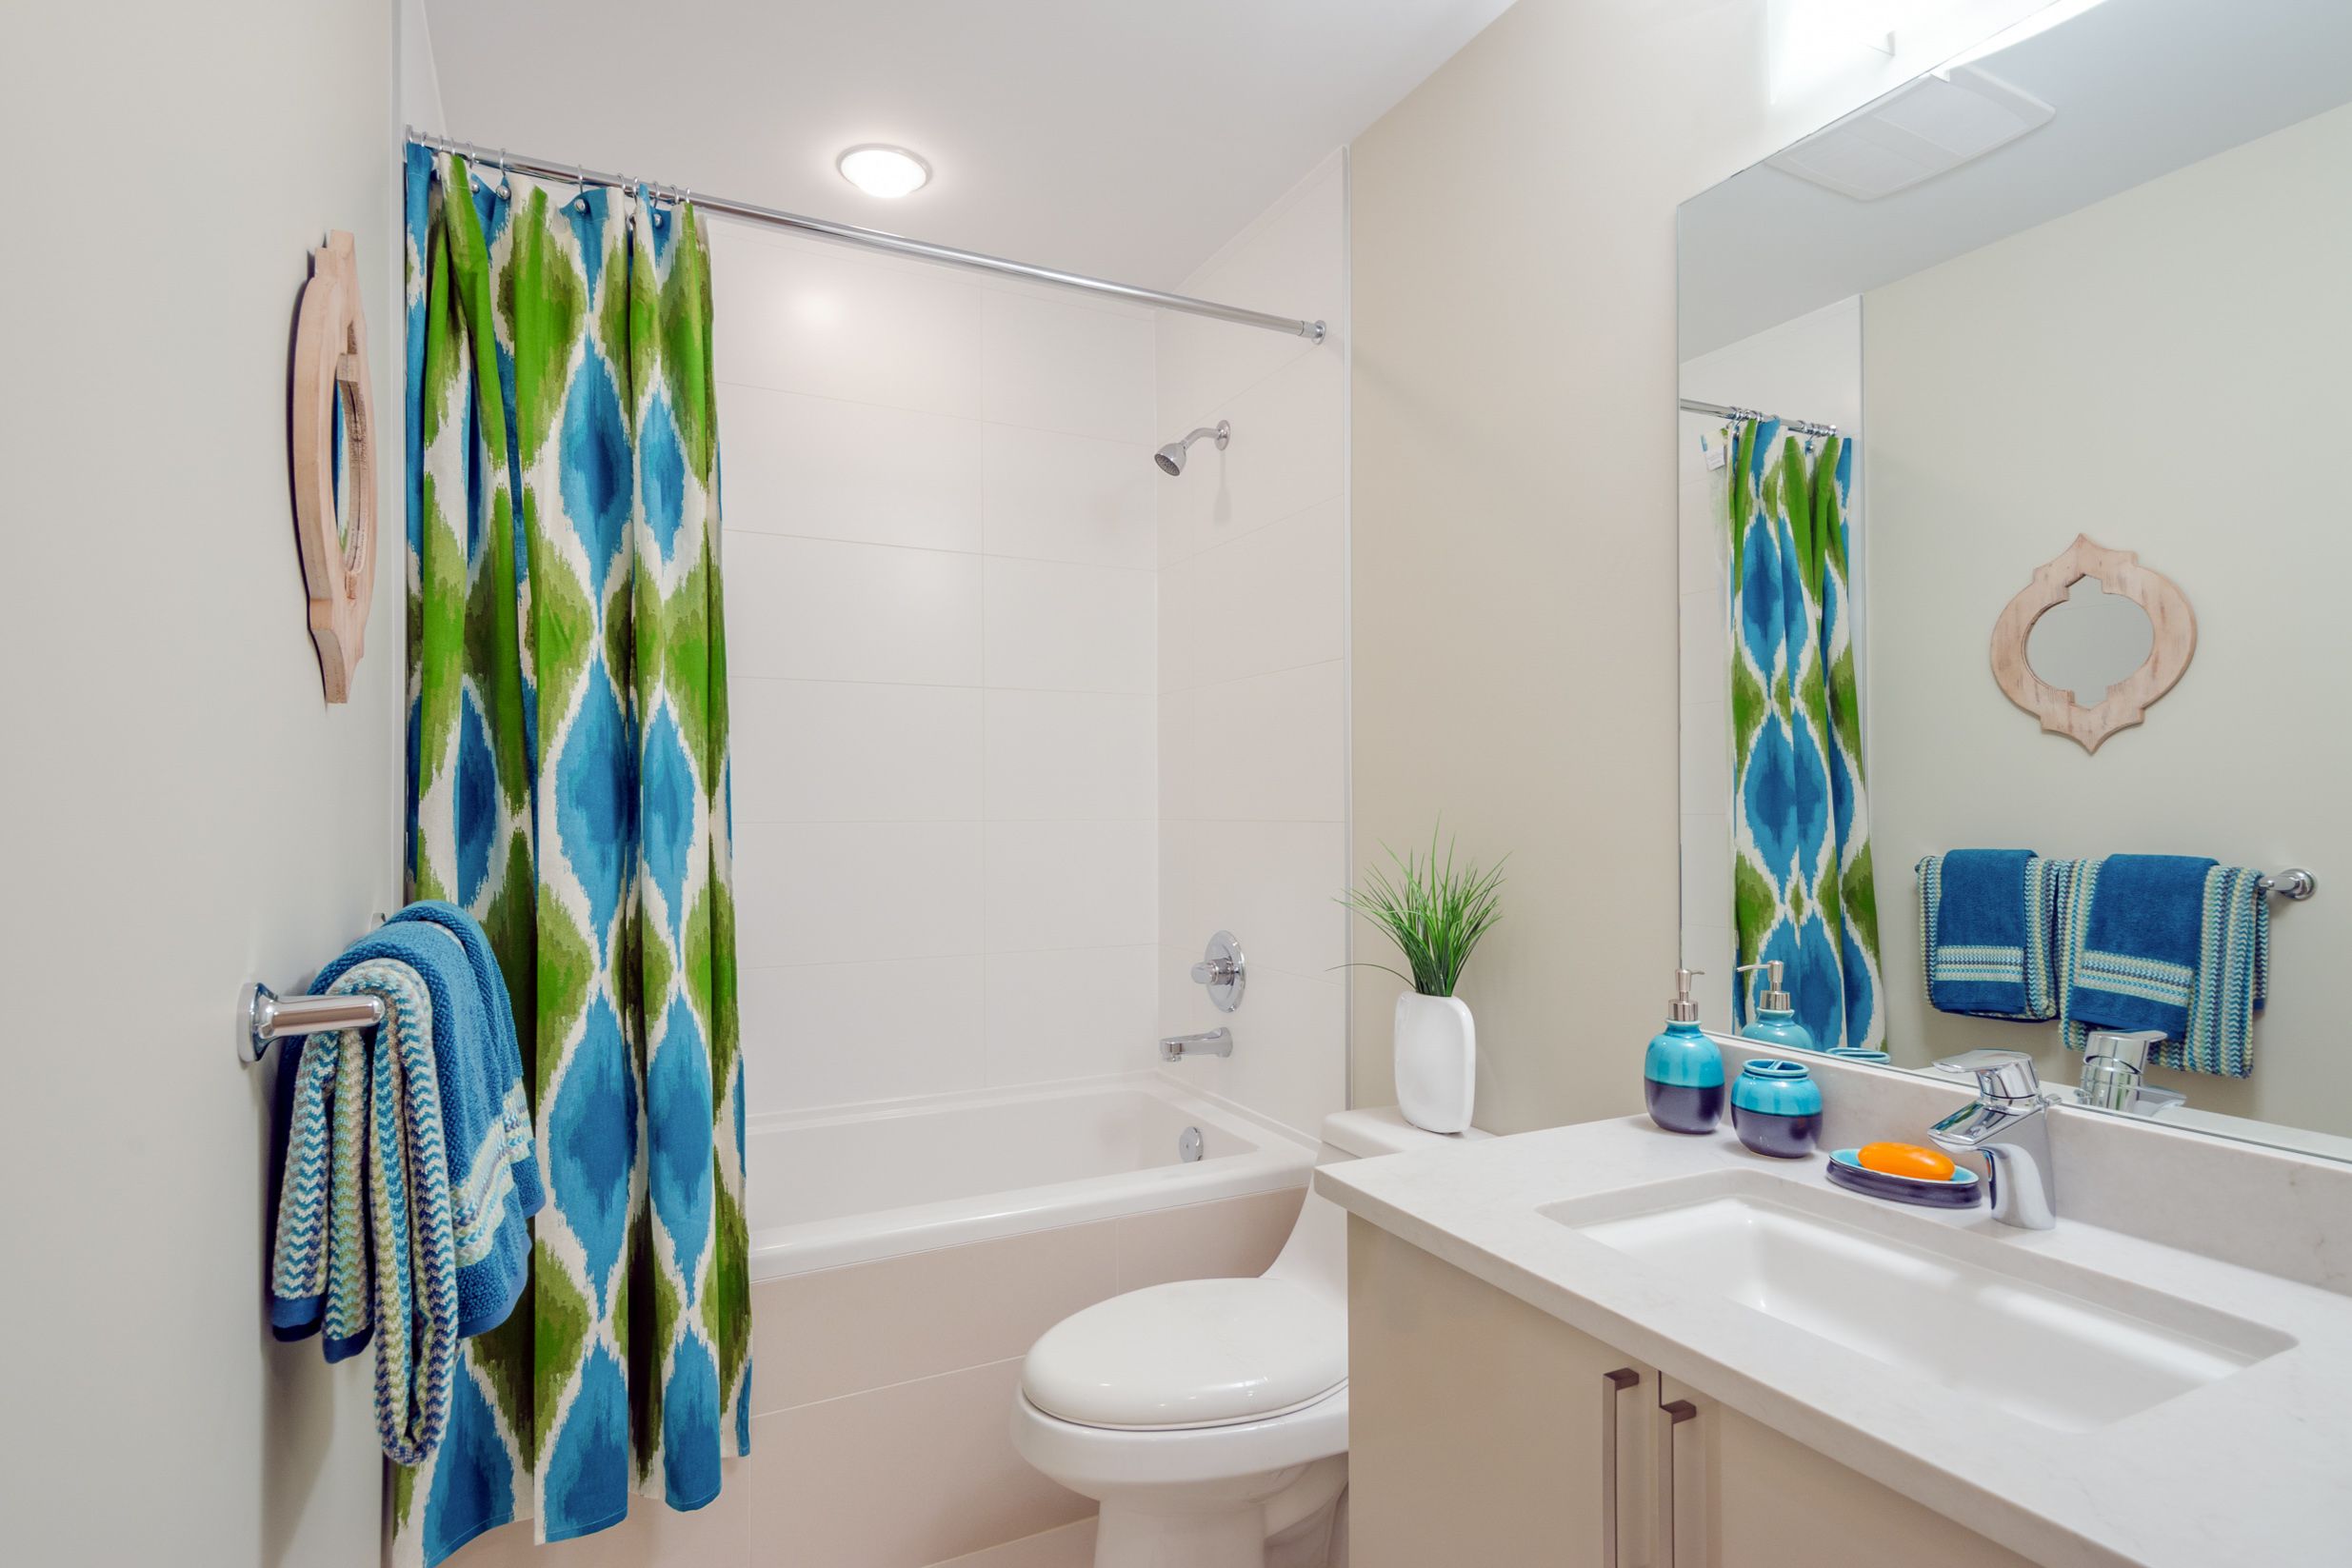 bathroom designs-shower curtains-bright shower curtain-colourful shower curtain-bathroom vanity